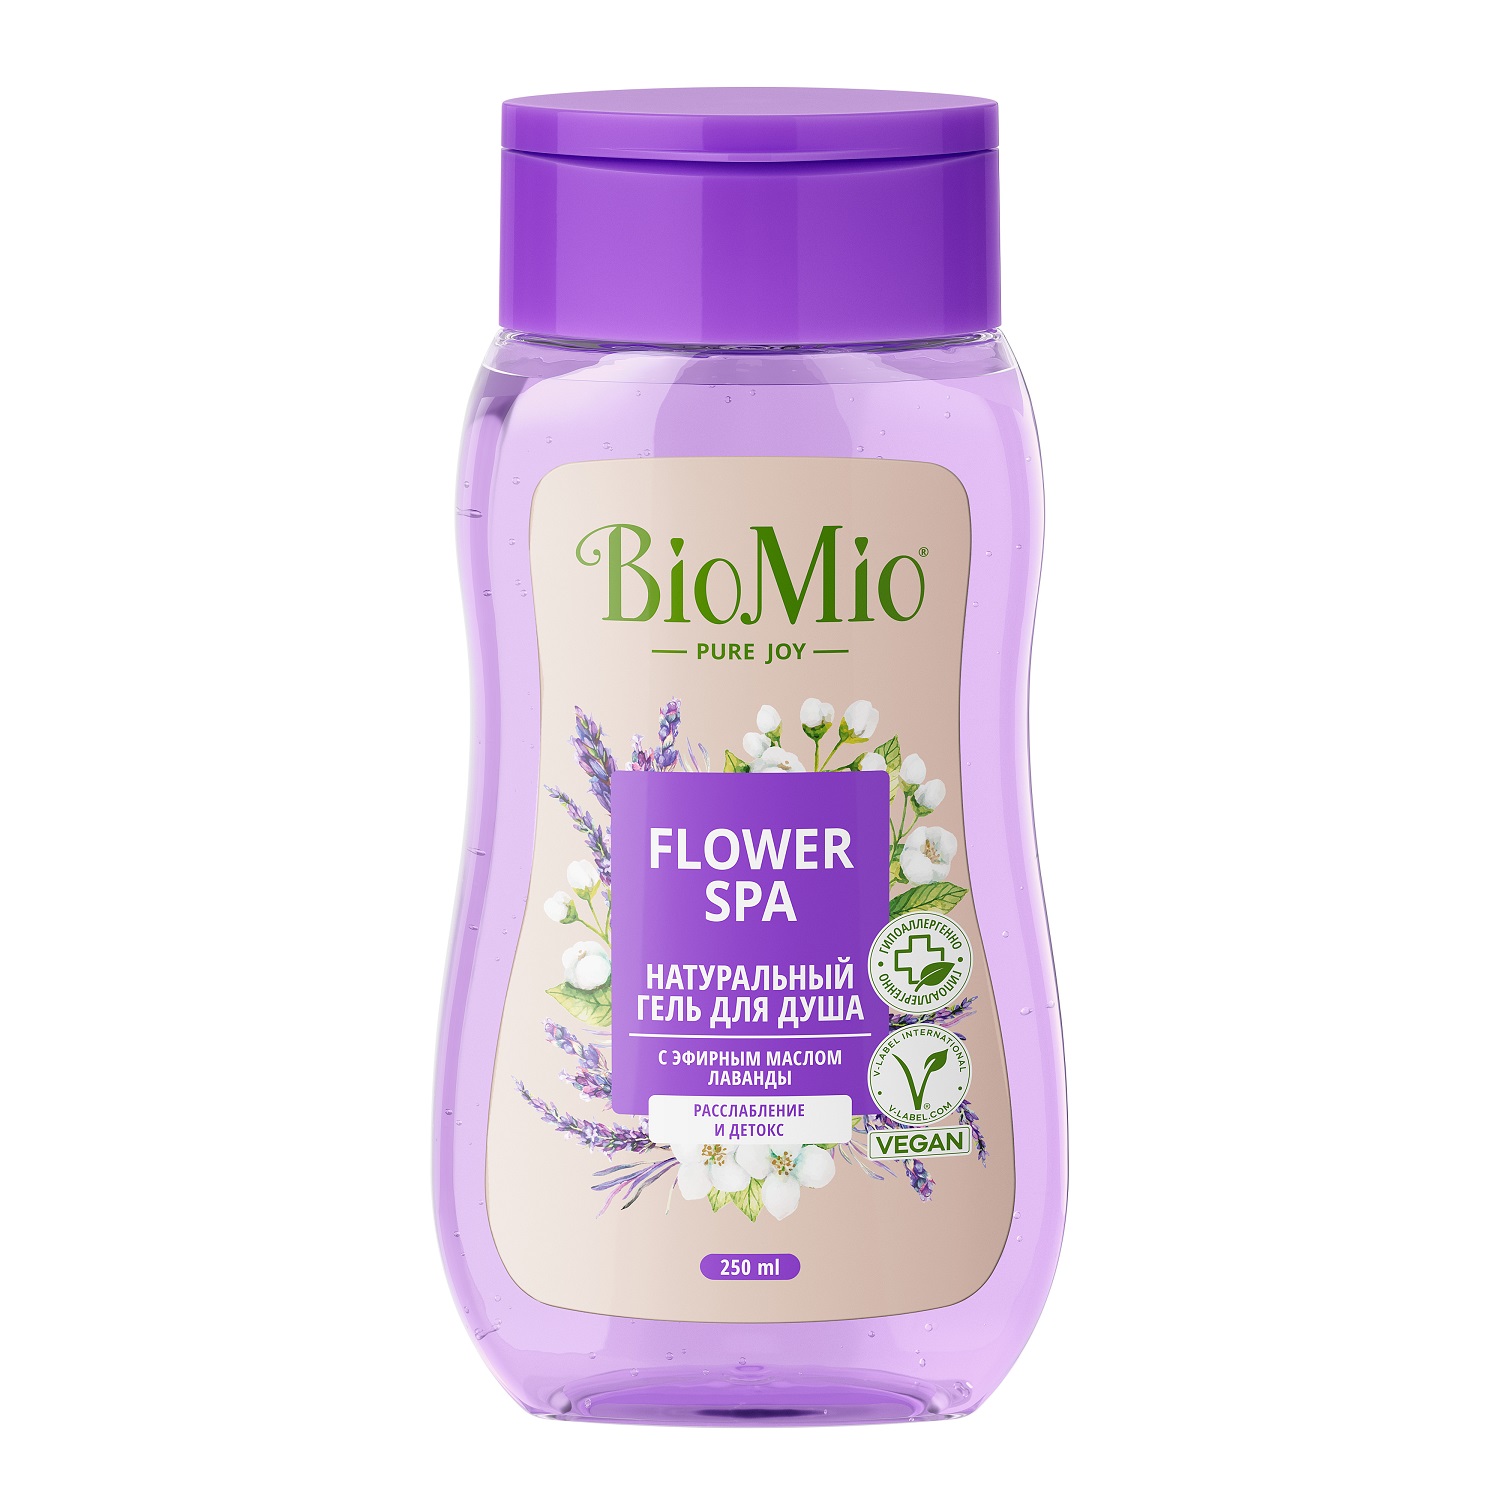 BioMio Гель для душа с эфирными маслами лаванды Flower Spa 3+, 250 мл (BioMio, Для ванны и душа) biomio гель для душа с эфирными маслами апельсина и бергамота citrus energy 3 250 мл biomio для ванны и душа